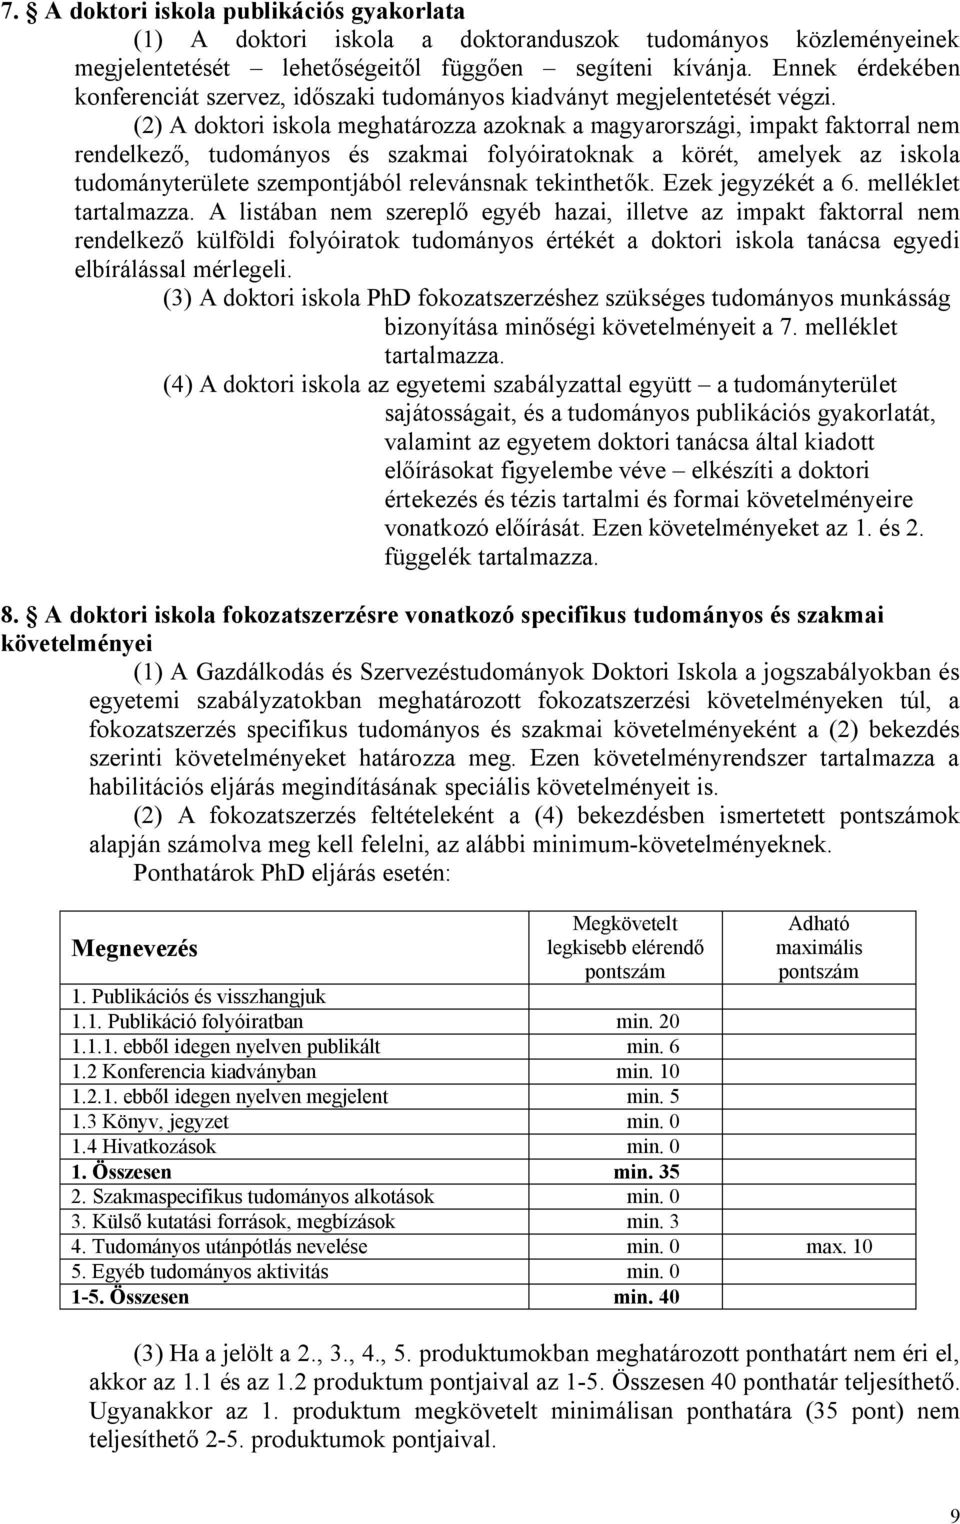 (2) A doktori iskola meghatározza azoknak a magyarországi, impakt faktorral nem rendelkező, tudományos és szakmai folyóiratoknak a körét, amelyek az iskola tudományterülete szempontjából relevánsnak